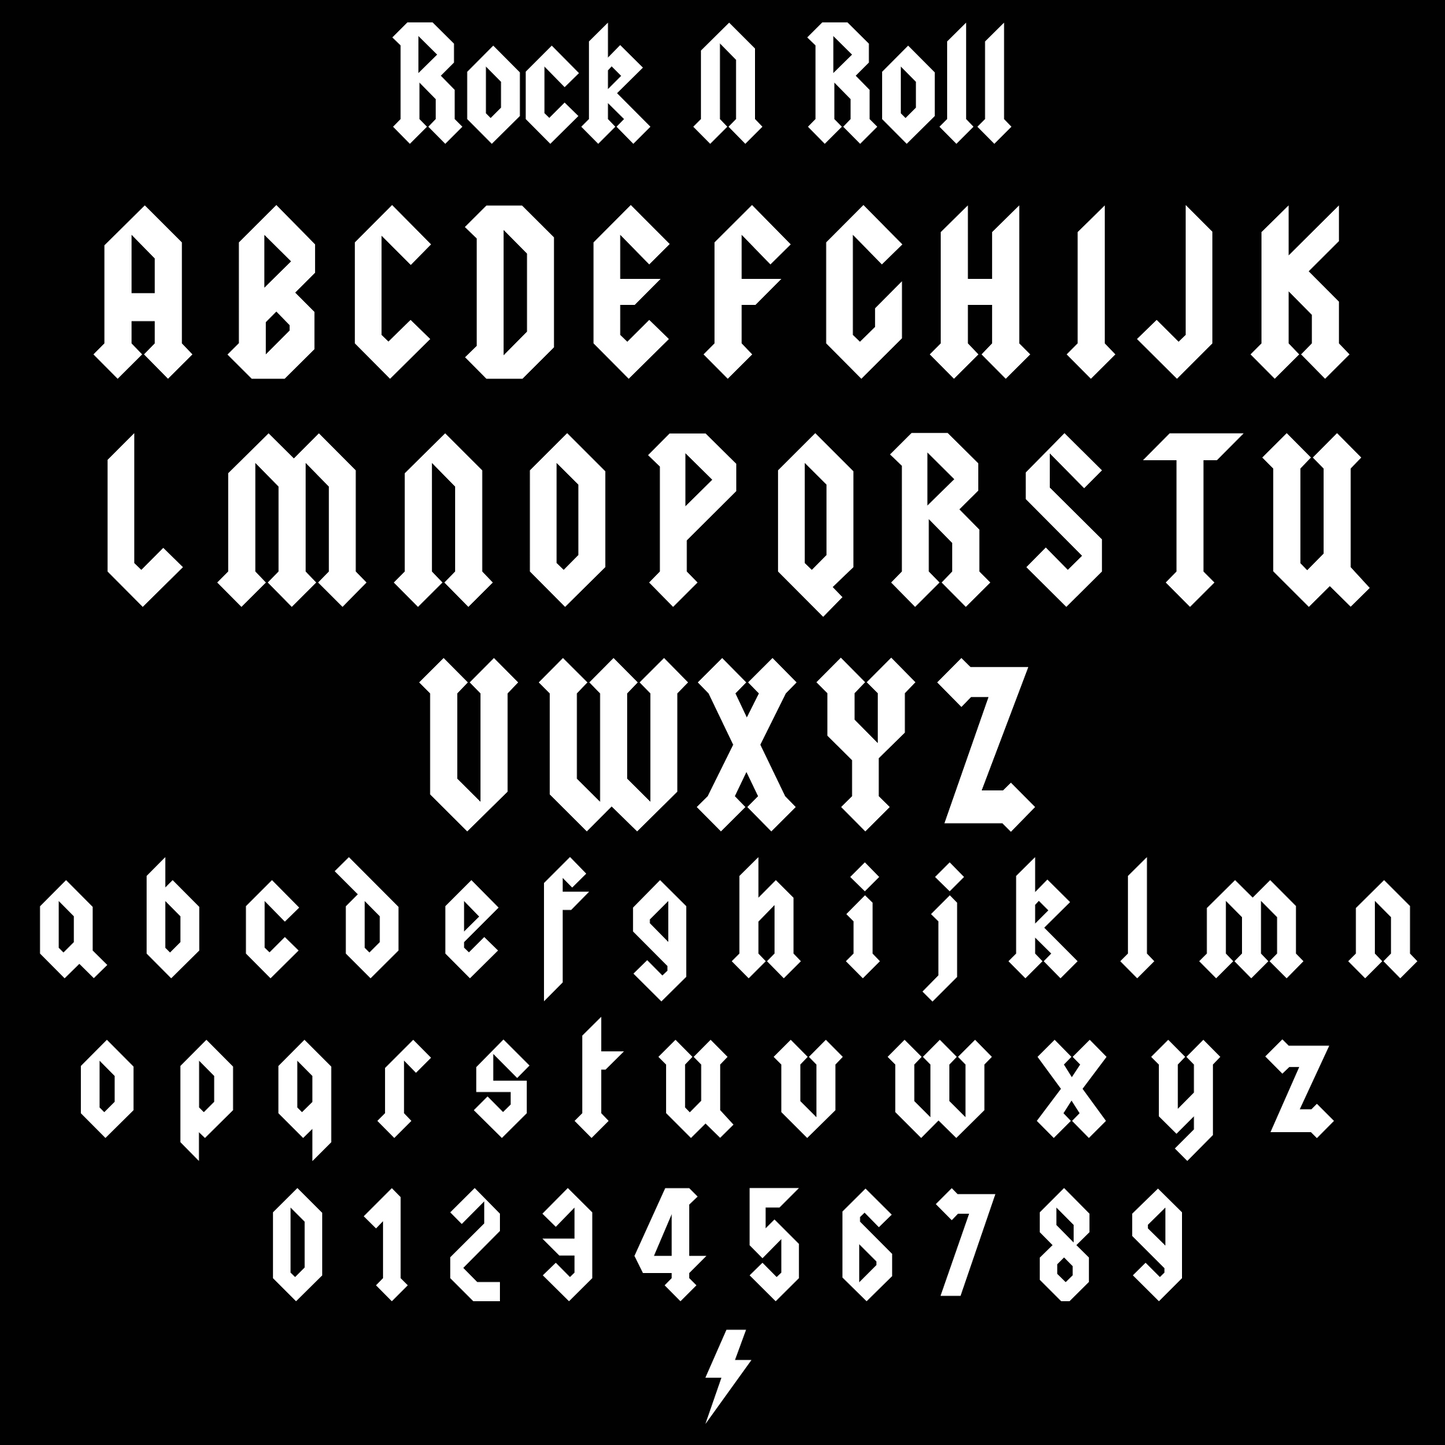 Rock 'N' Roll Personalised Name Necklace mysticumluna2021